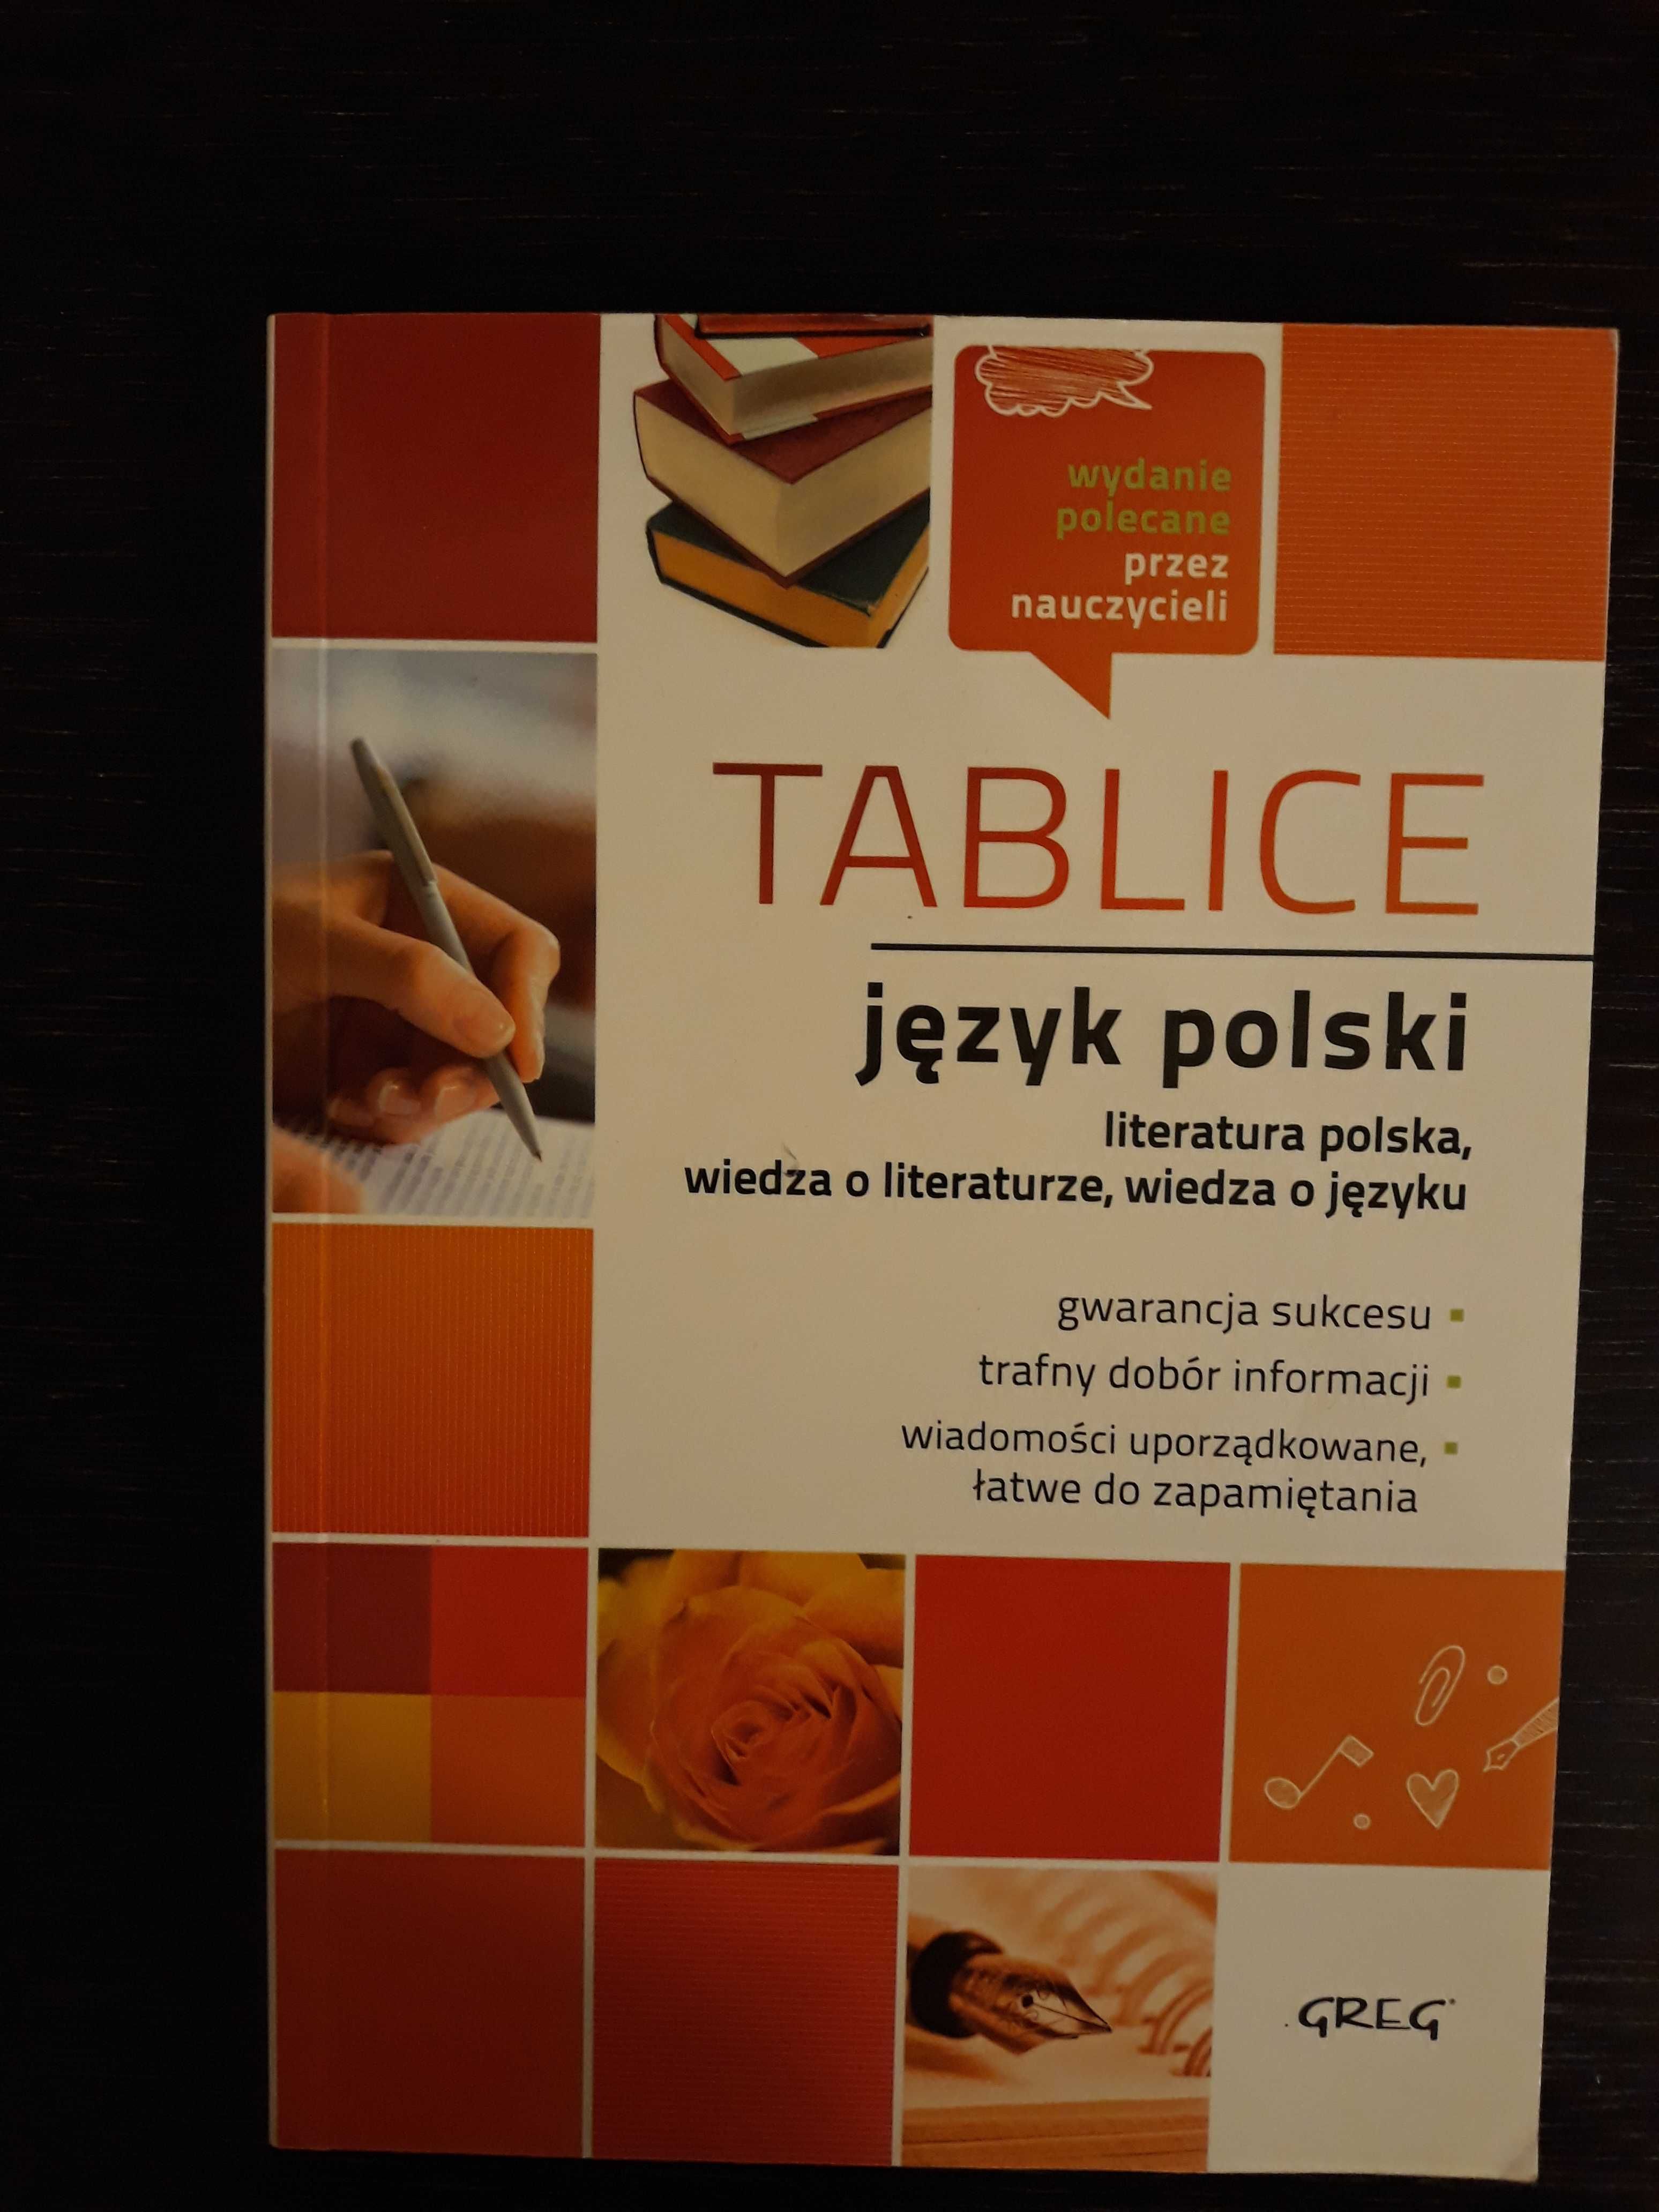 Tablice język polski, liceum, wyd. GREG 2017